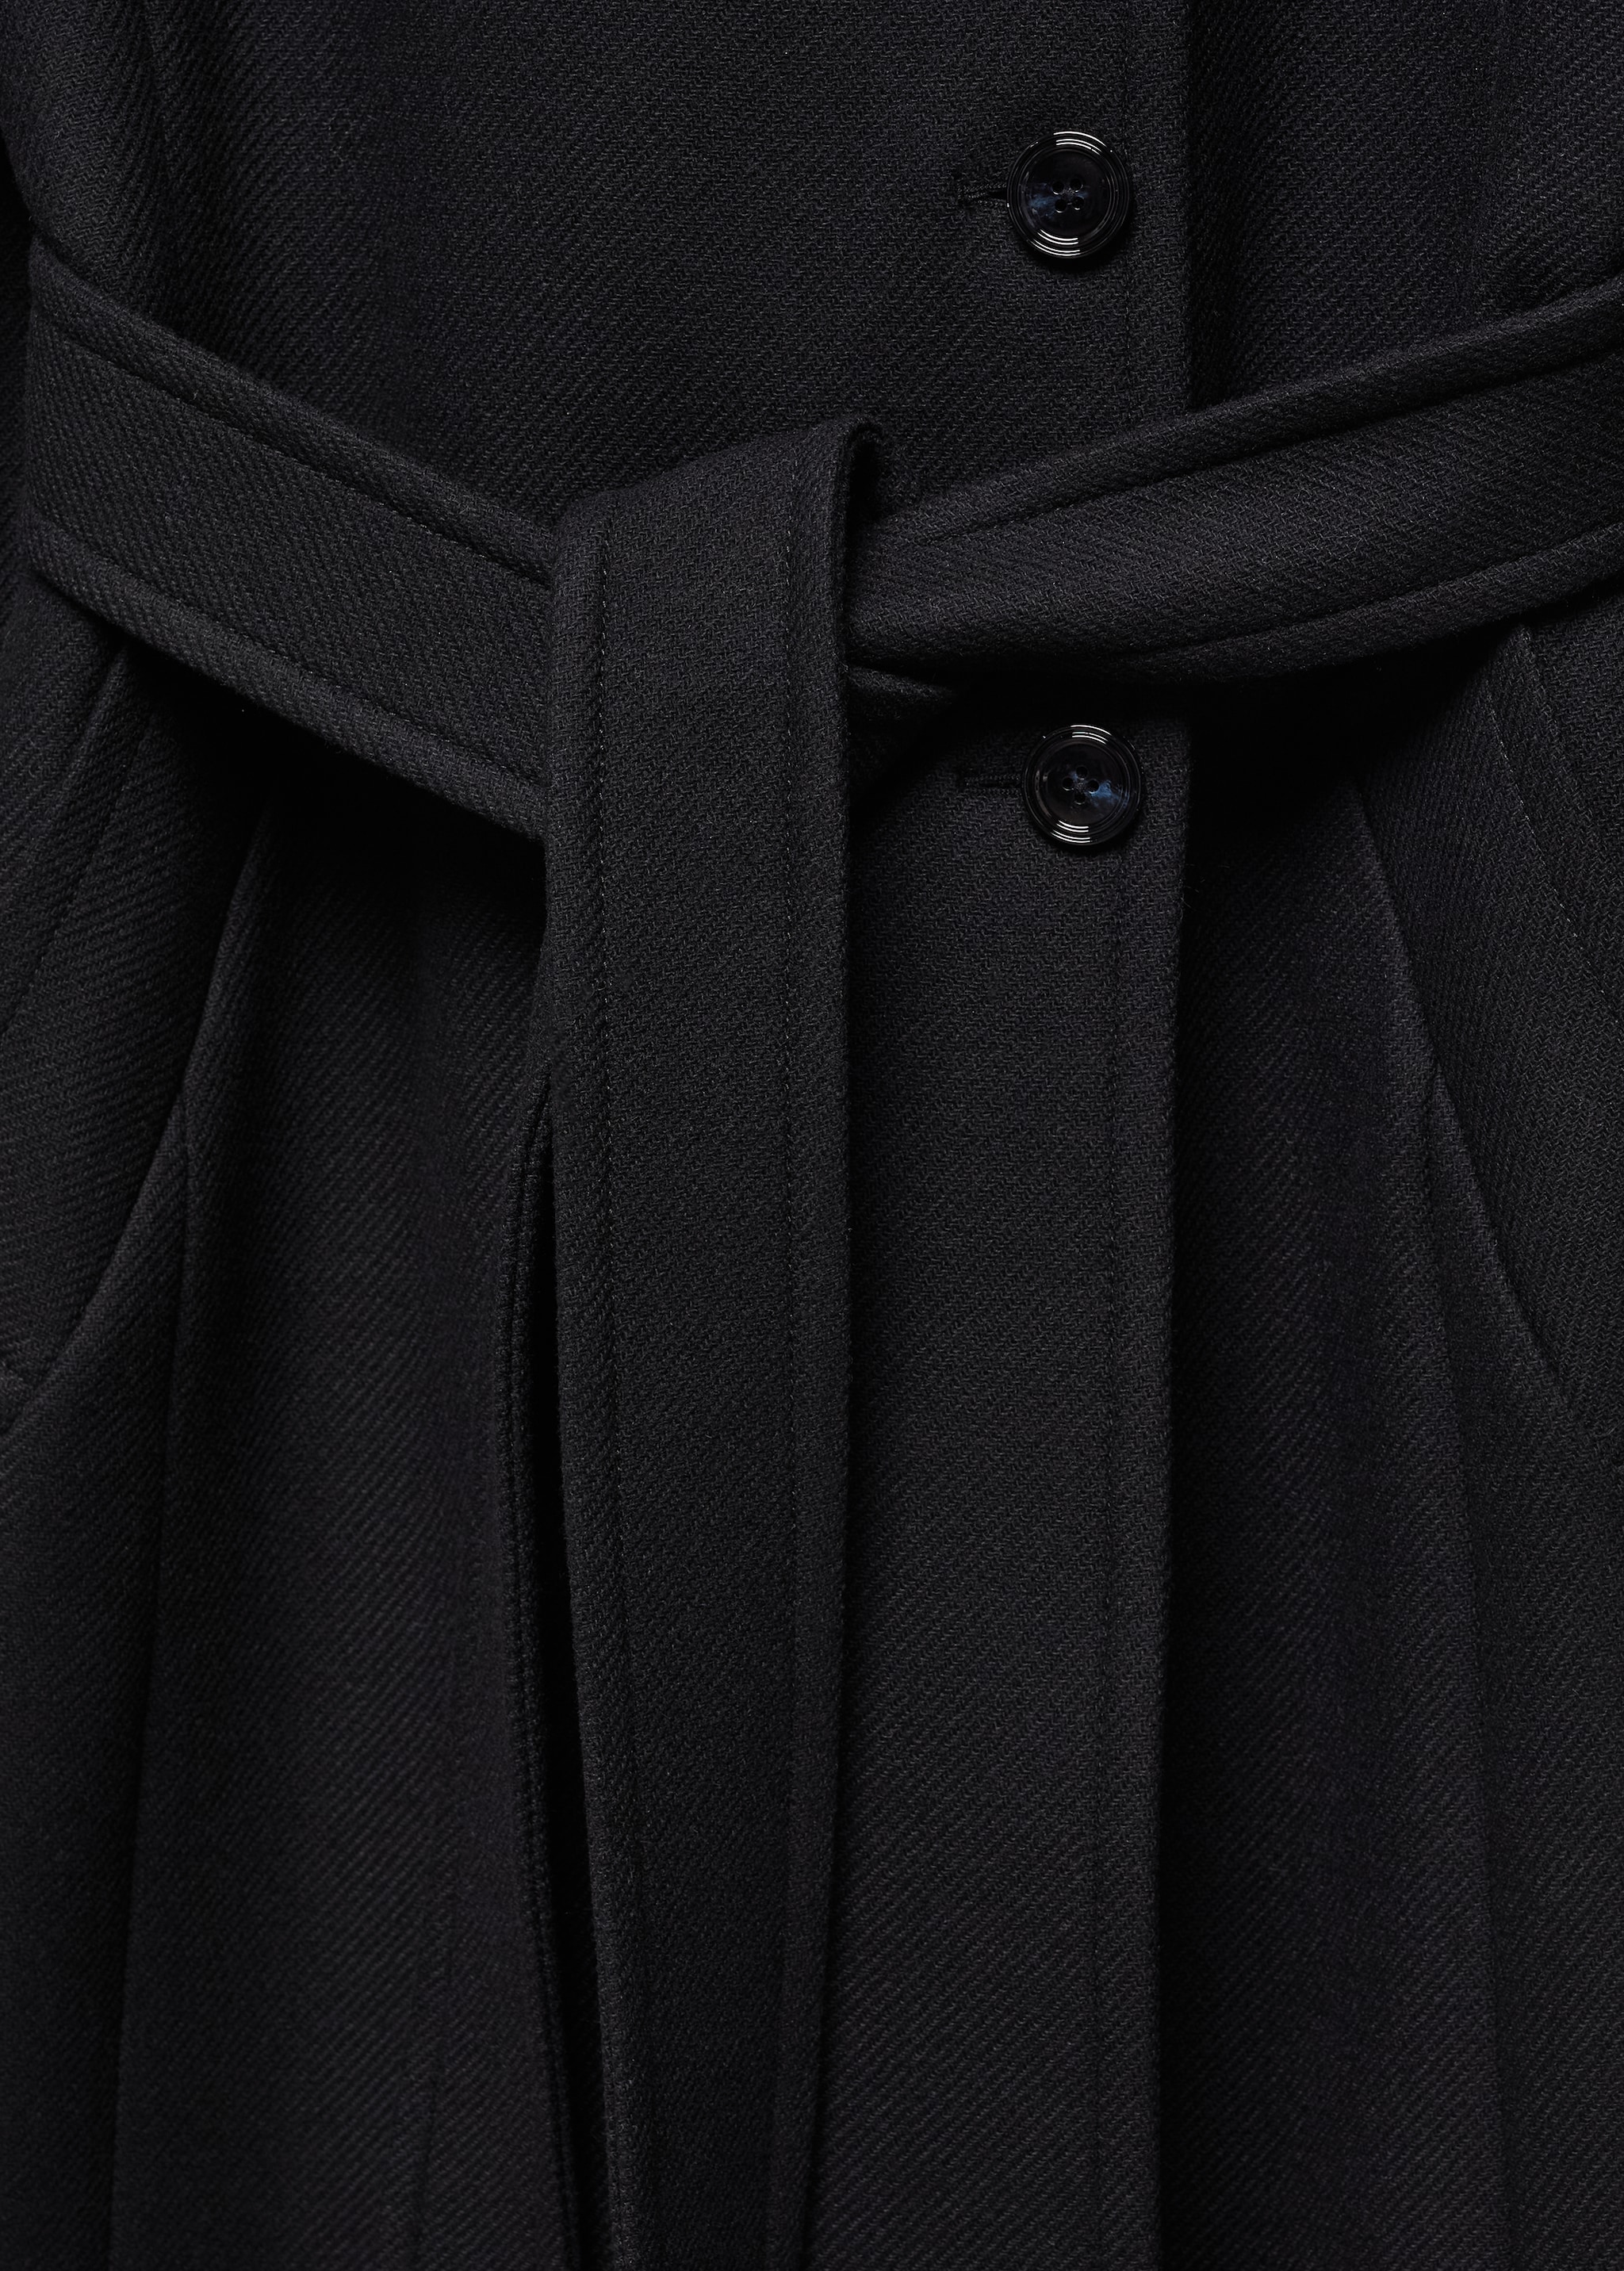 Cappotto lana Manteco cintura - Dettaglio dell'articolo 8